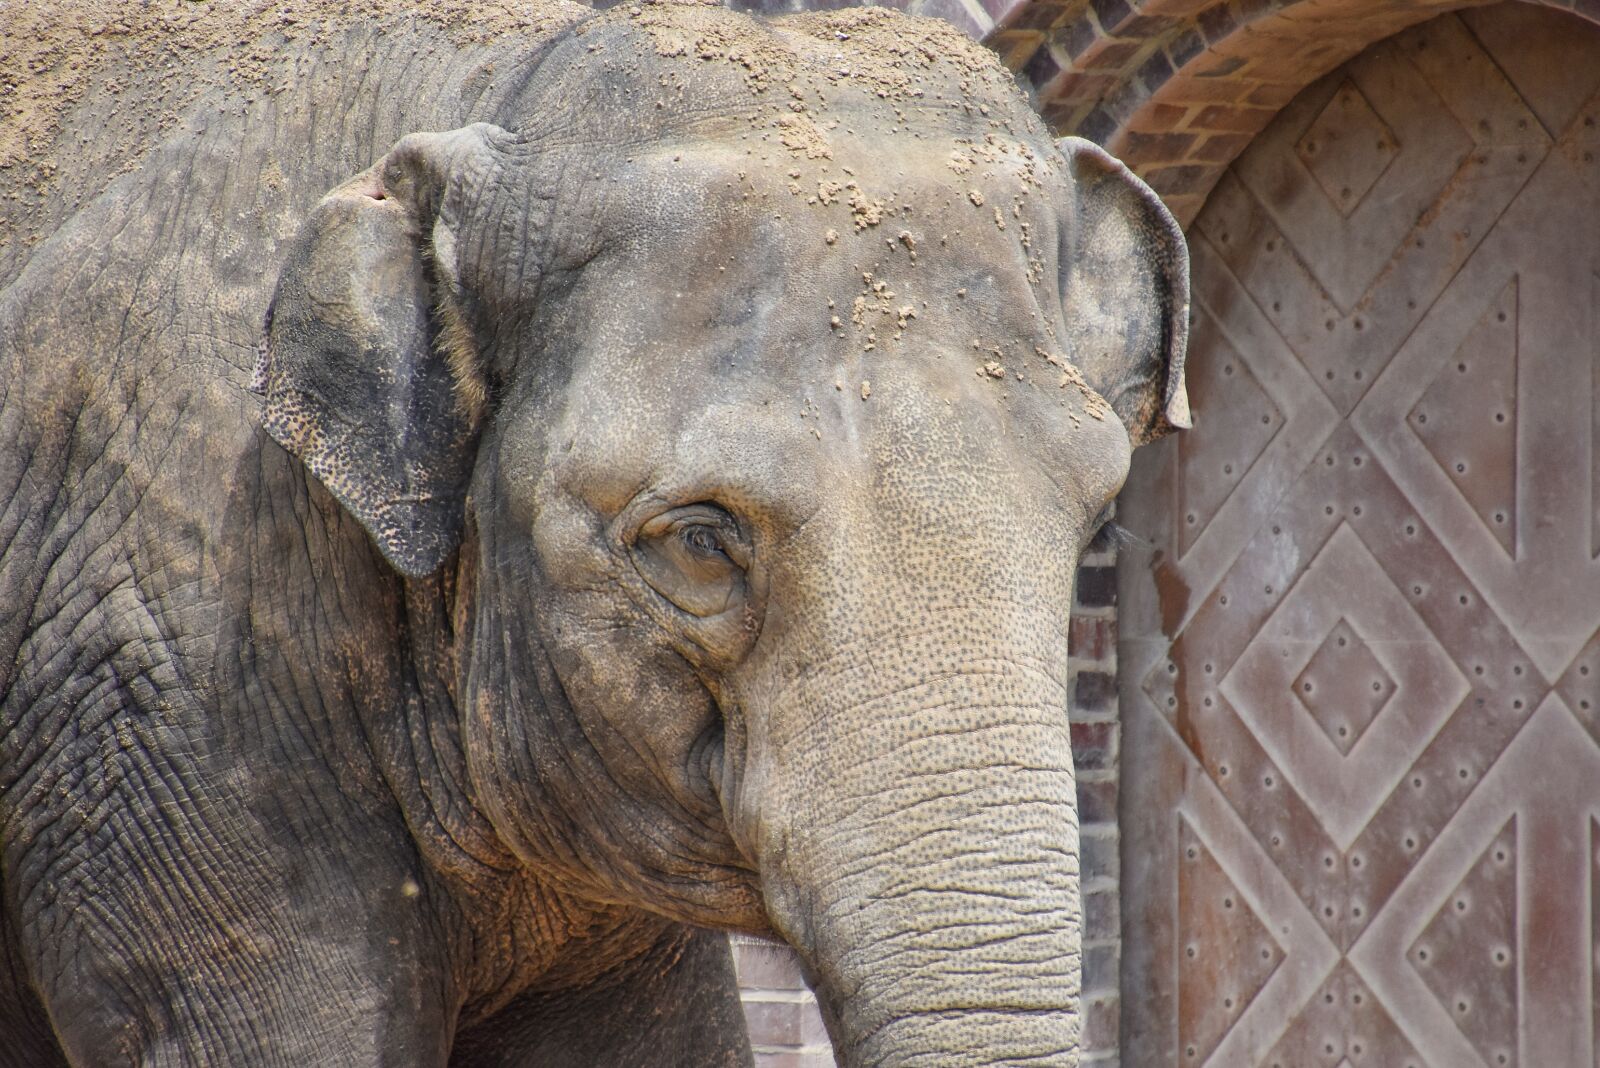 Nikon D3400 sample photo. Elephant, ears, face photography